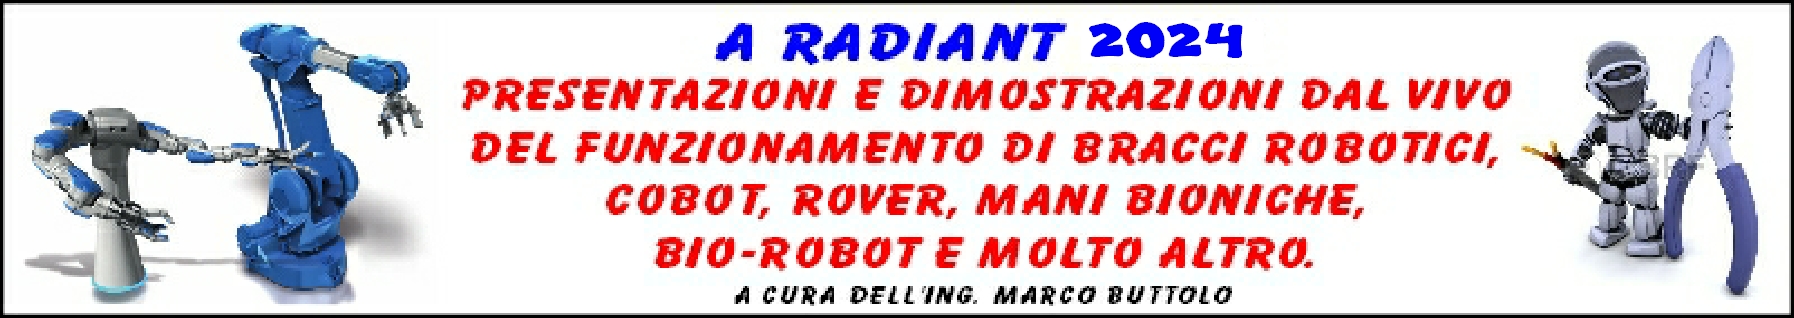 Robotica a
            Radiant - gennaio 2024